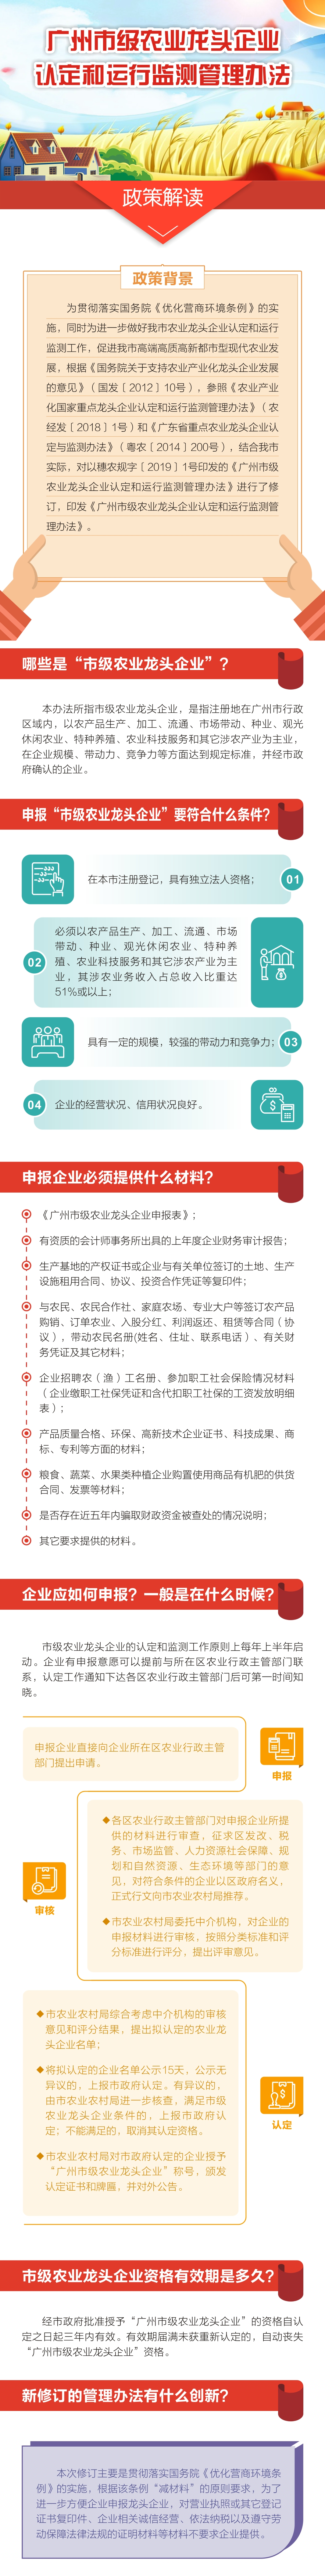 图解《广州市级农业龙头企业认定和运行监测管理办法》.bmp